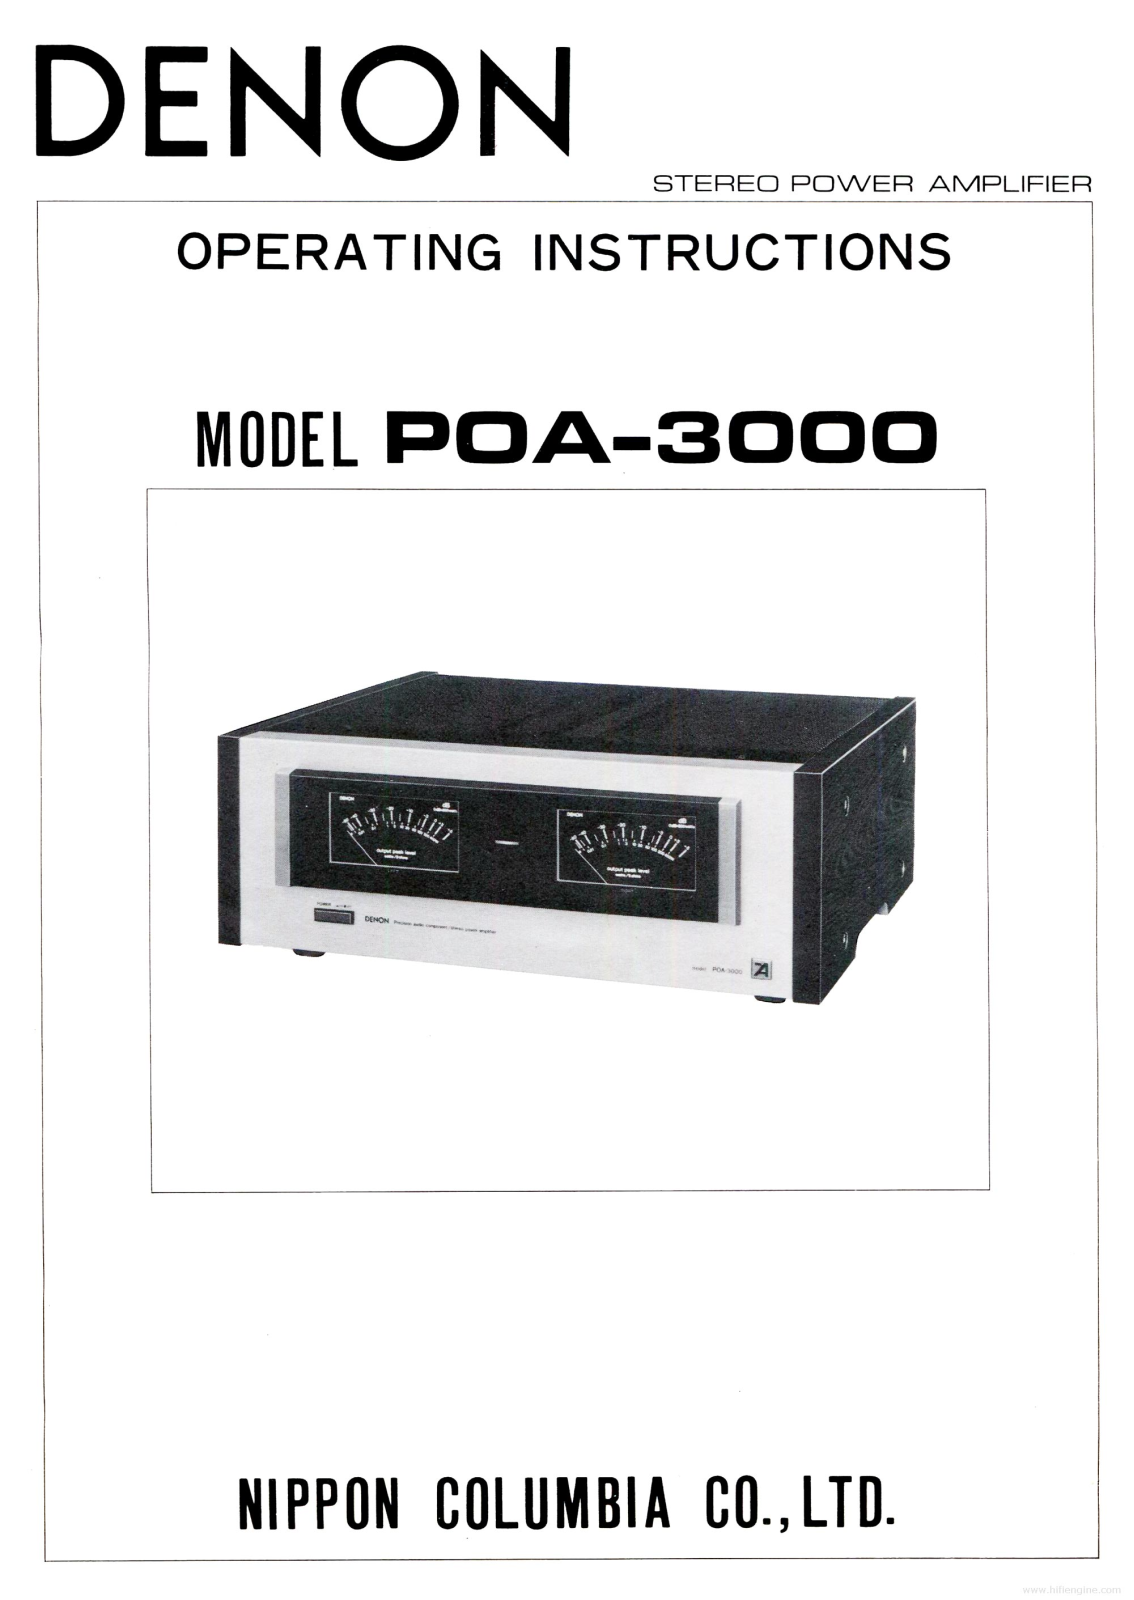 Denon POA-3000 User Manual